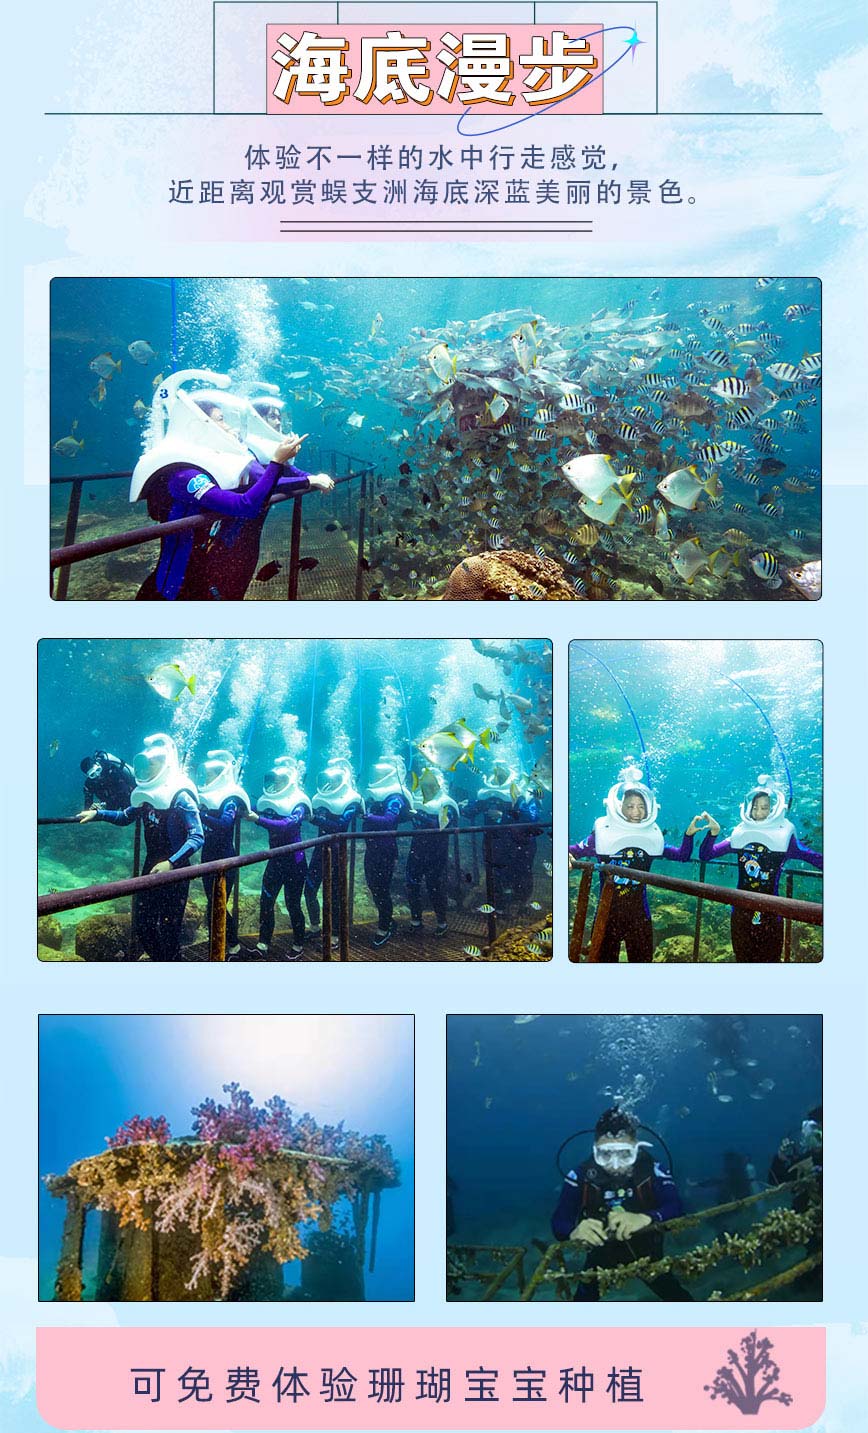 豪華環島潛-海底漫步